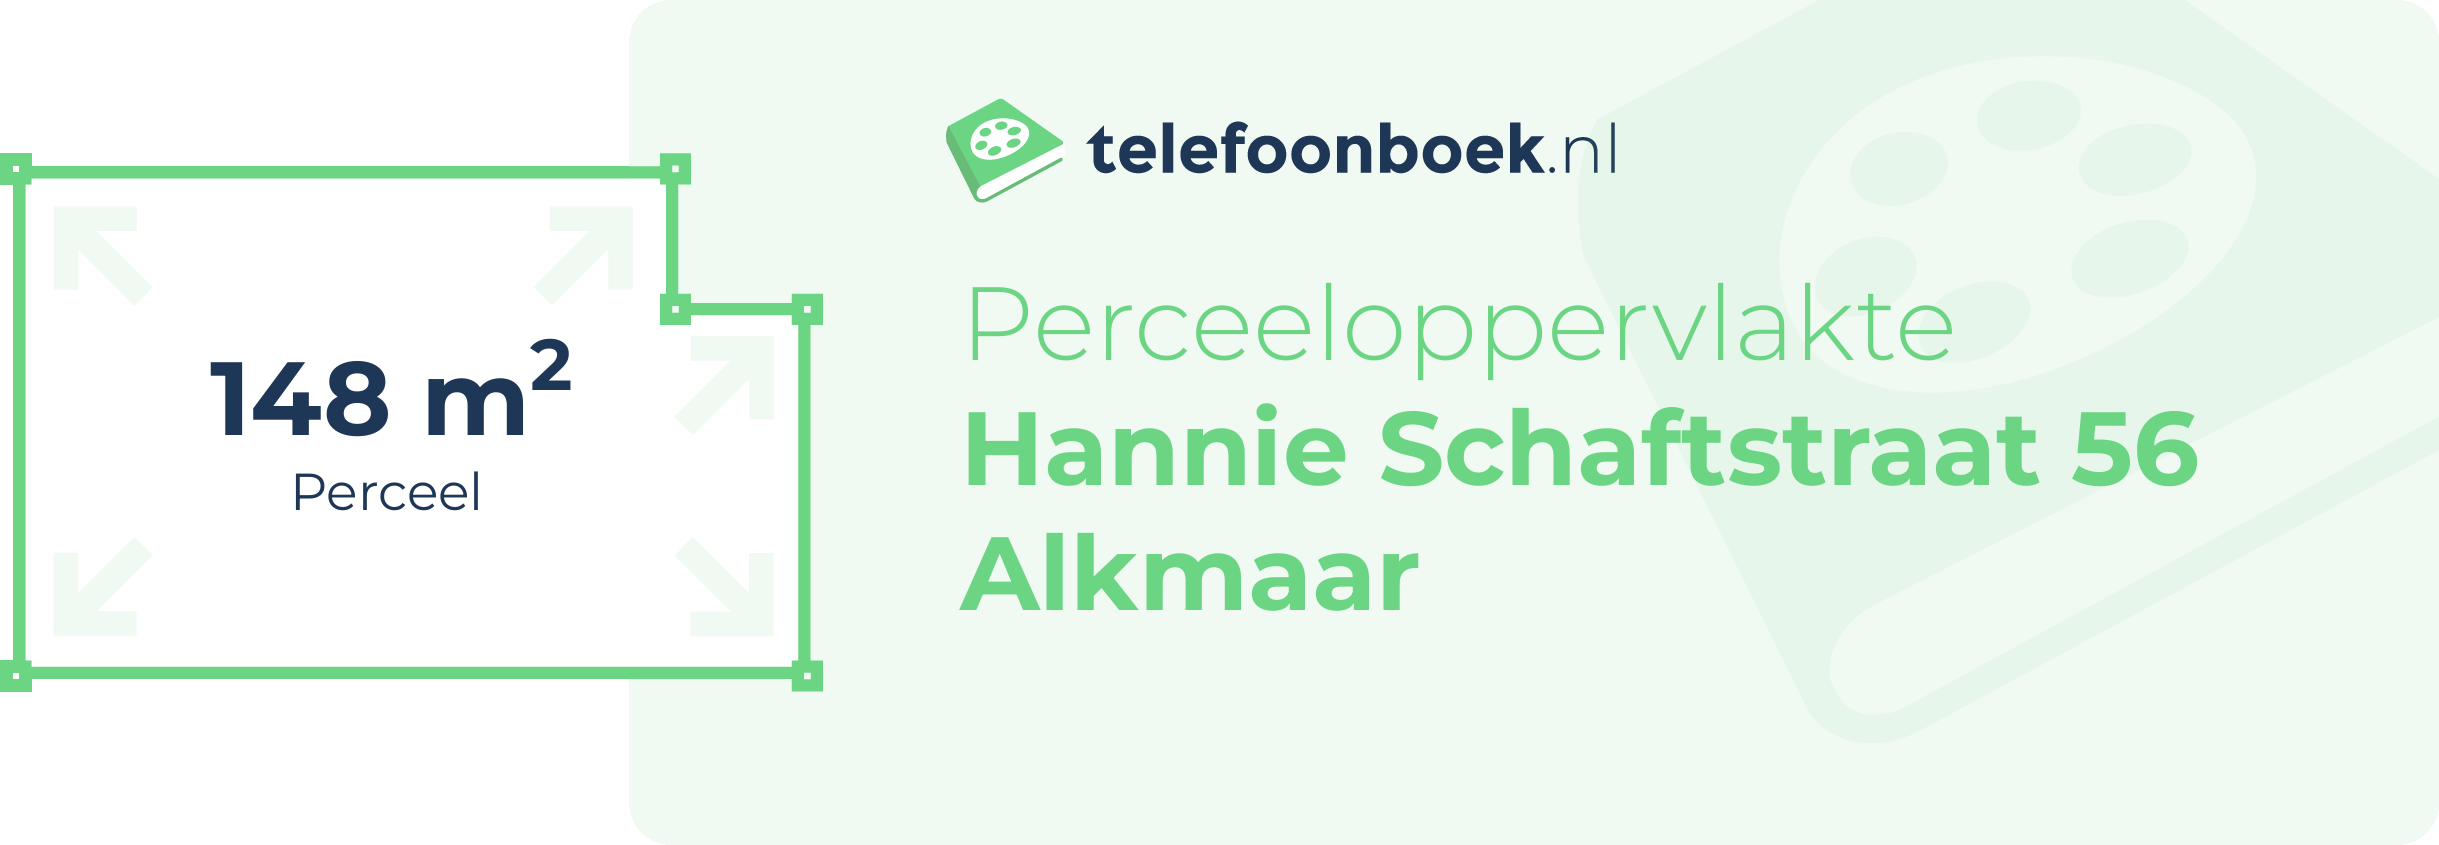 Perceeloppervlakte Hannie Schaftstraat 56 Alkmaar